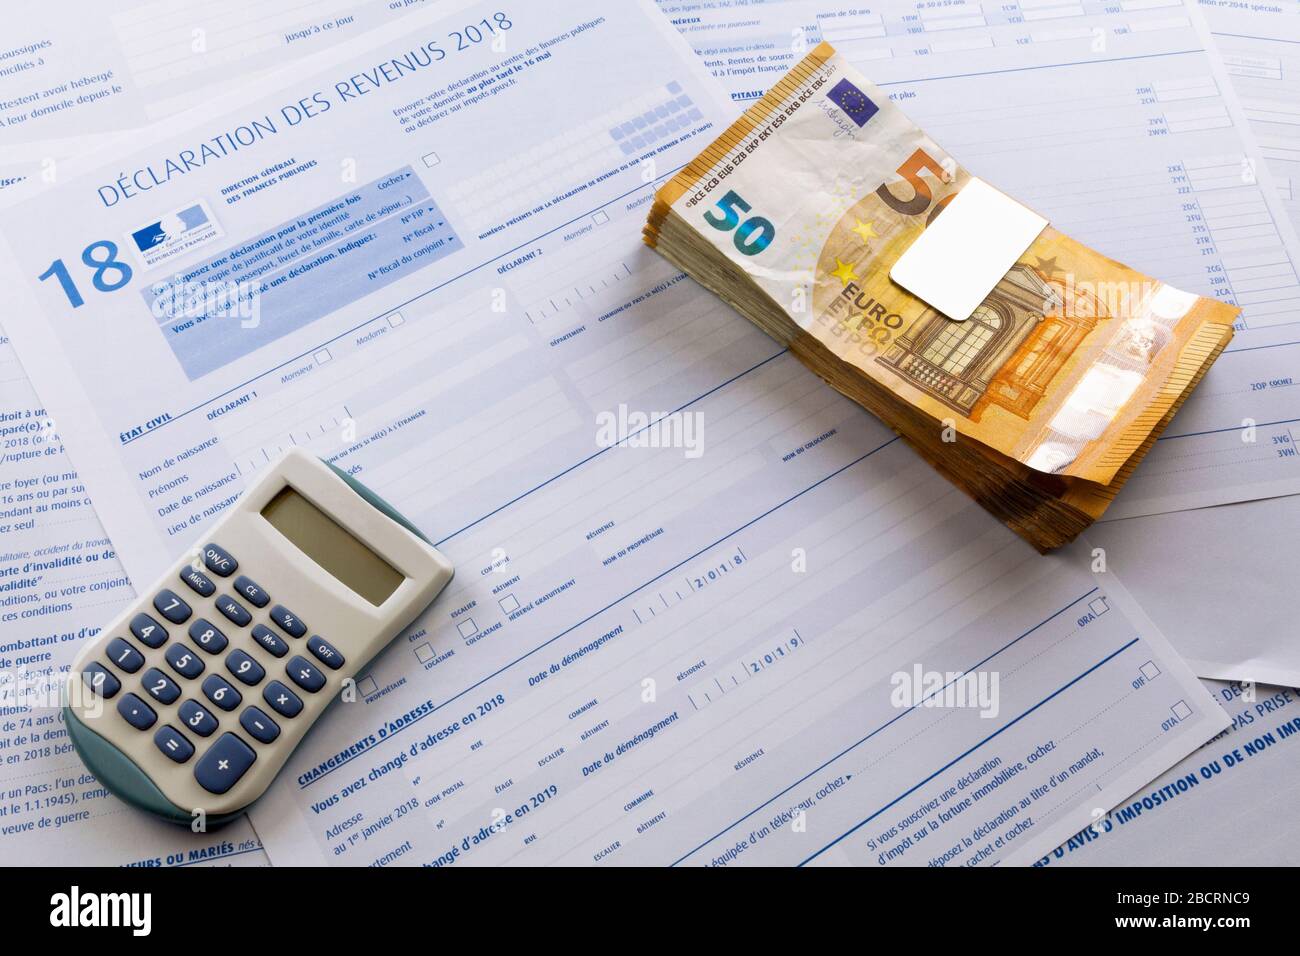 Une calculatrice et une pile de 50 billets en euros en plus d'un formulaire d'impôt français sur le revenu. Banque D'Images